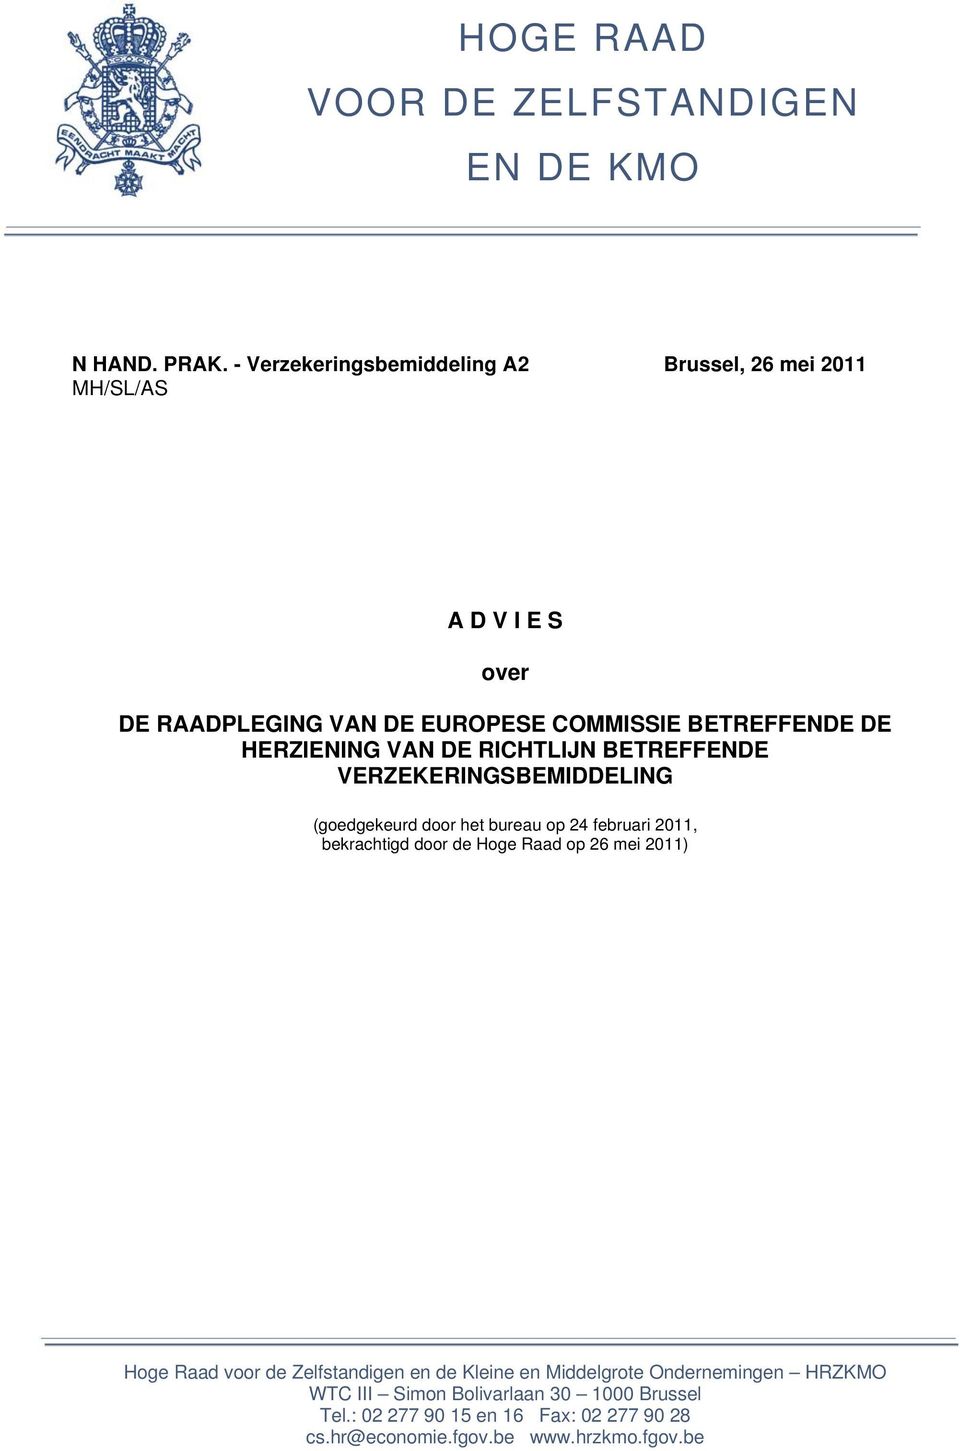 HERZIENING VAN DE RICHTLIJN BETREFFENDE VERZEKERINGSBEMIDDELING (goedgekeurd door het bureau op 24 februari 2011, bekrachtigd door de Hoge